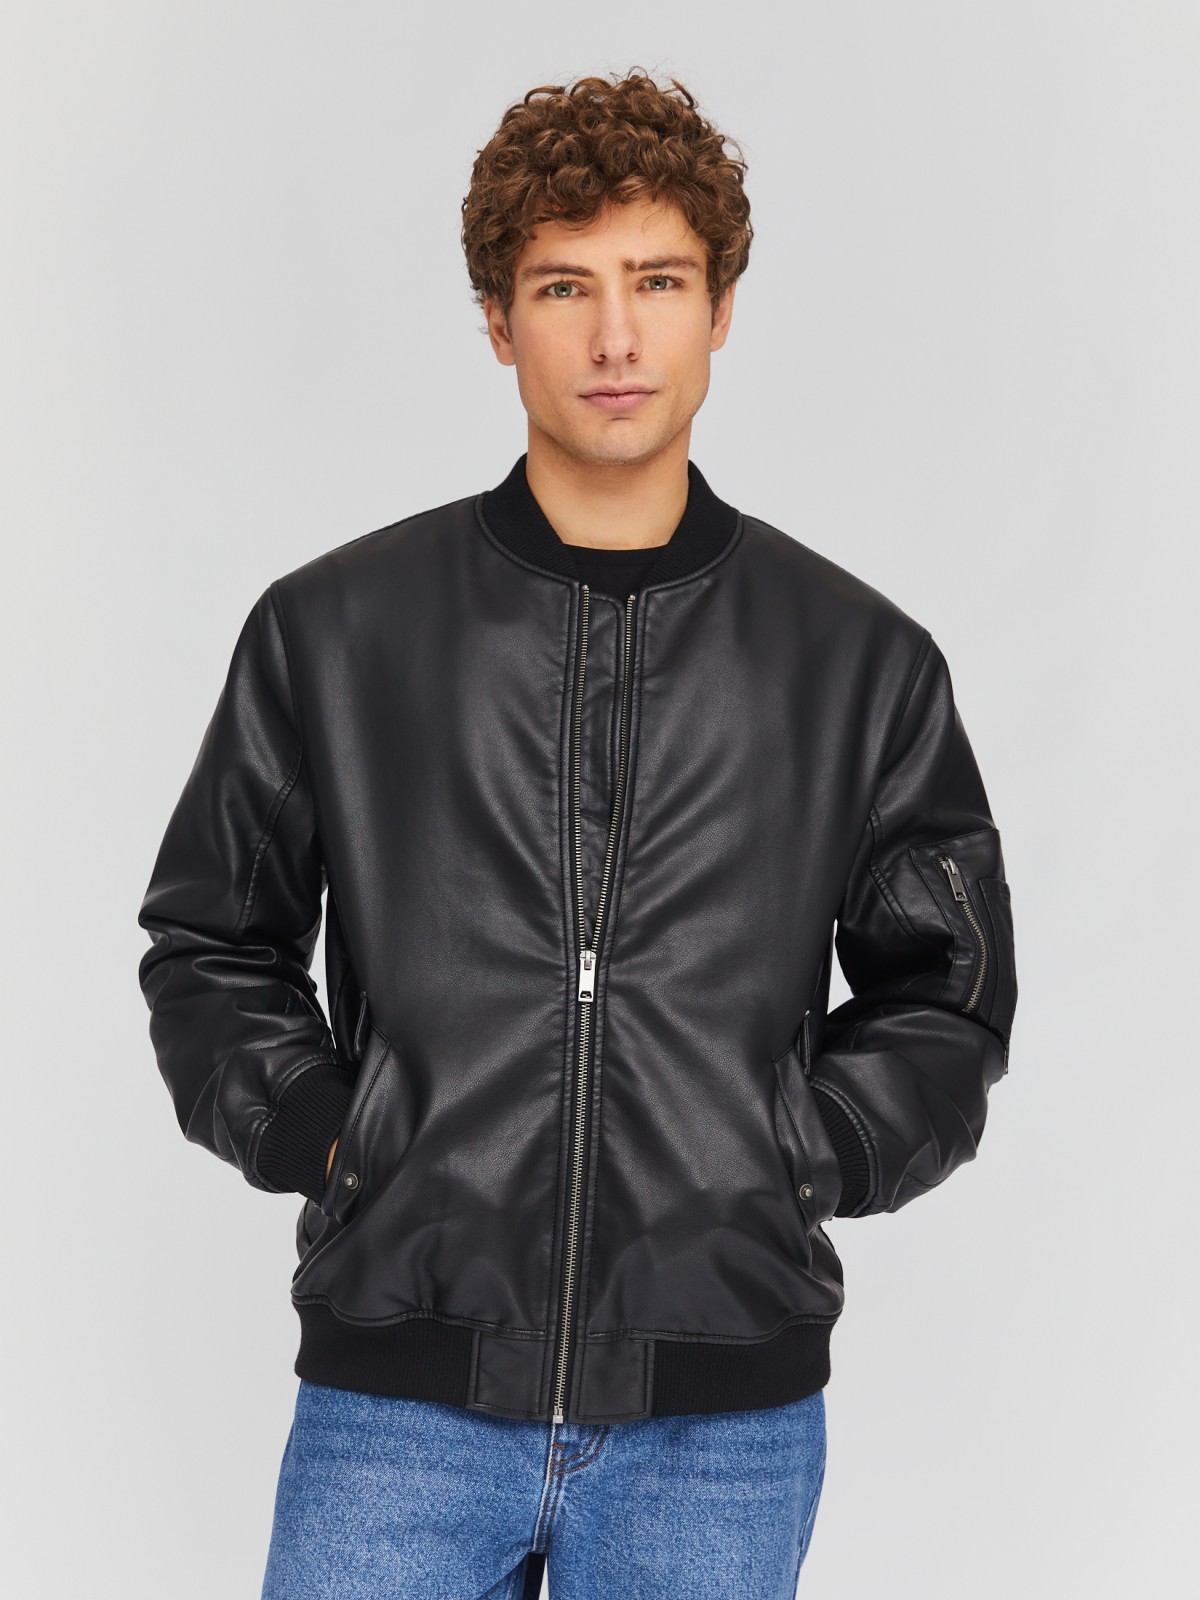 Утеплённая куртка-бомбер из экокожи на синтепоне zolla 014135150134, цвет черный, размер M - фото 1